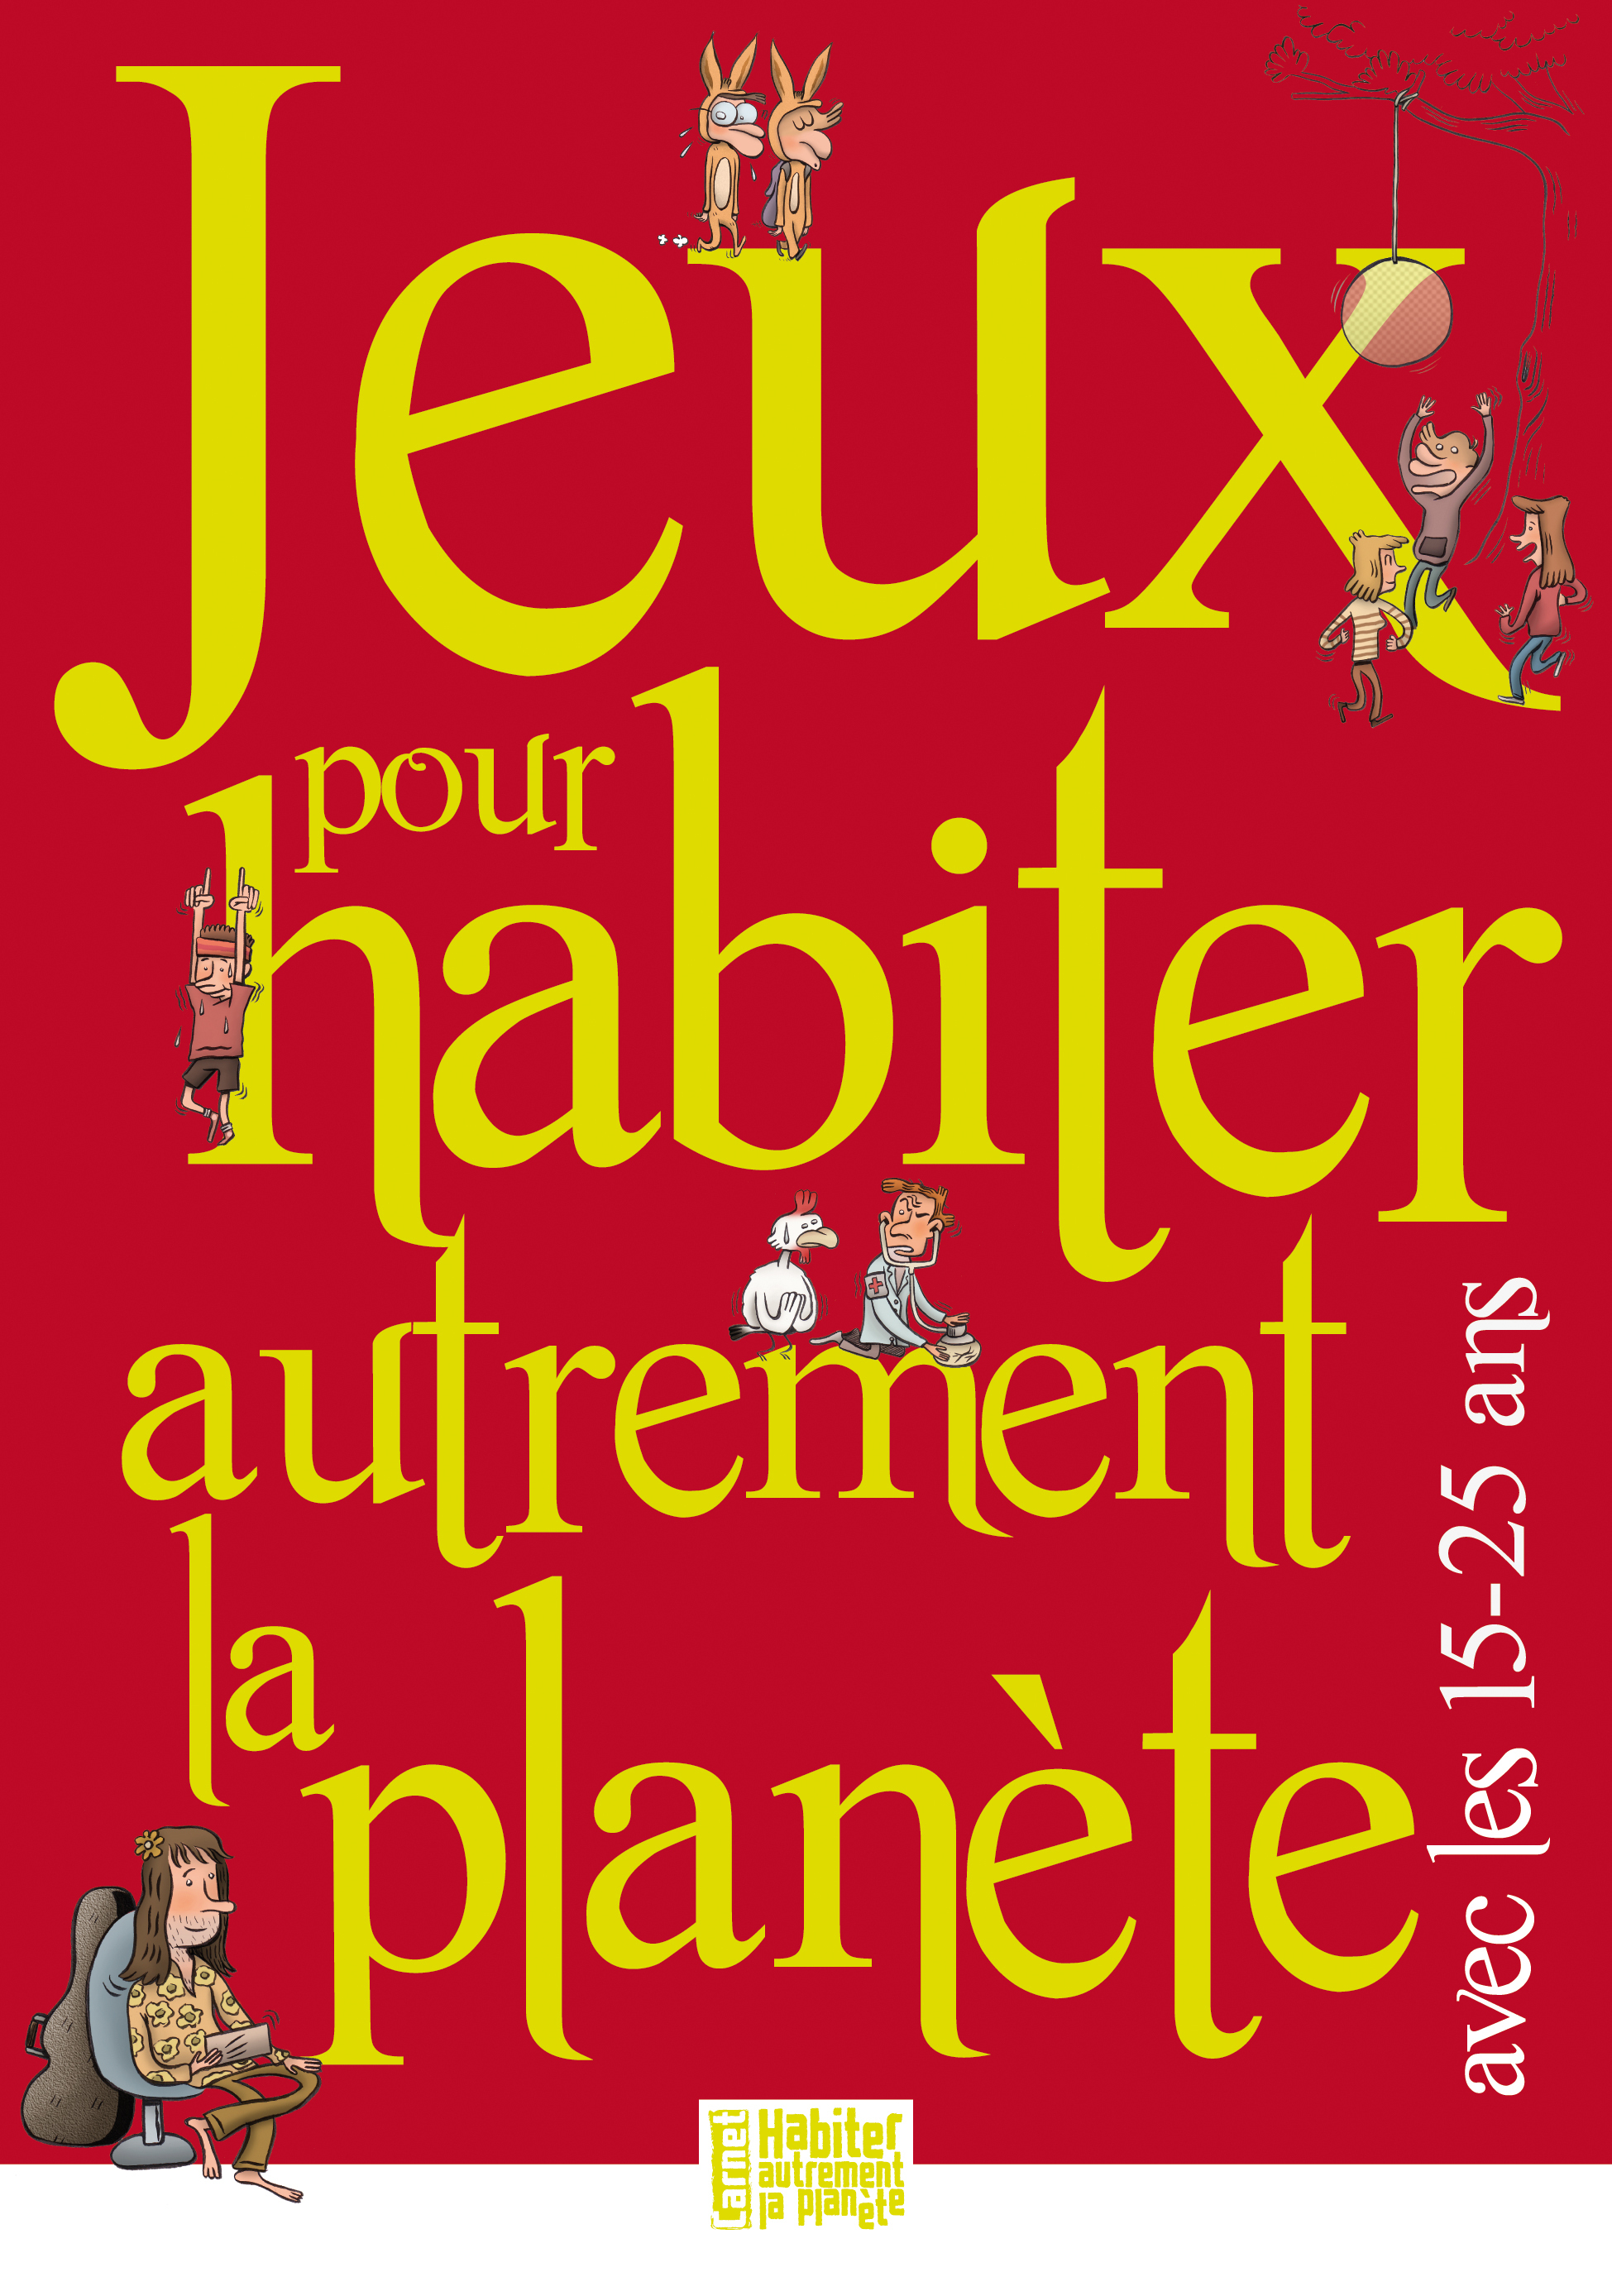 JEUX POUR HABITER AUTREMENT LA PLANÈTE AVEC LES 15-25 ANS (9782708881389-front-cover)